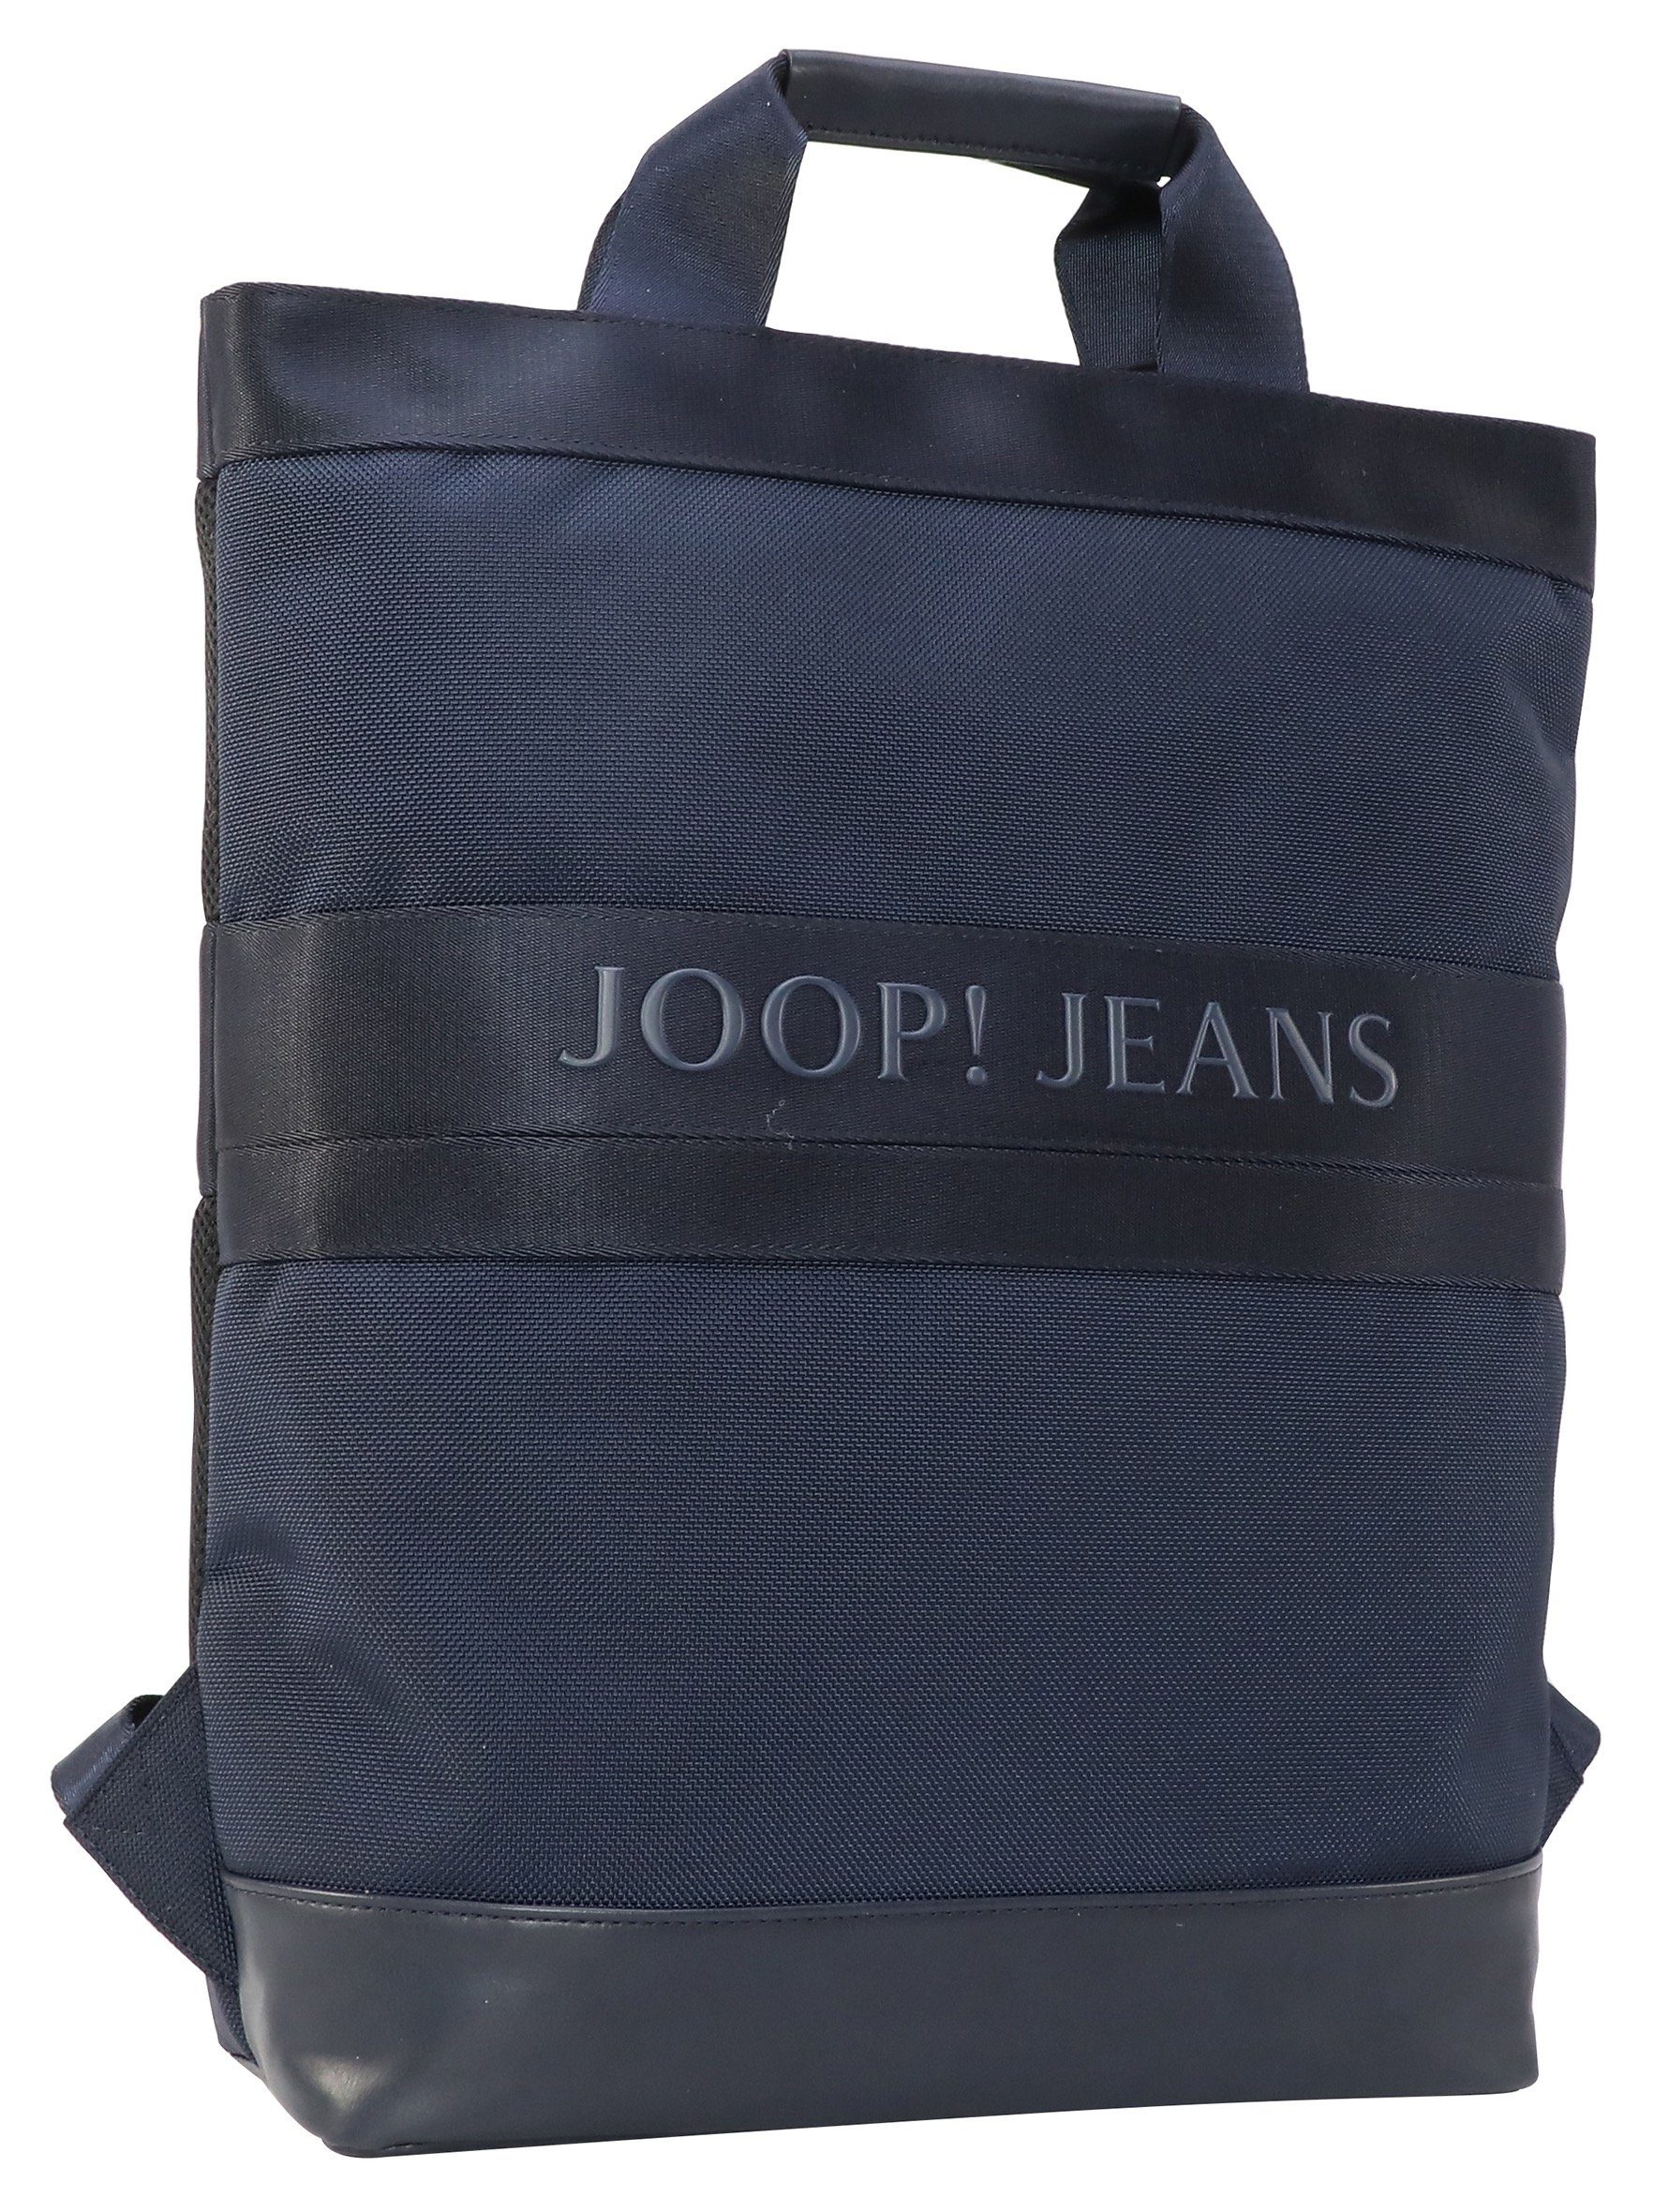 Joop Jeans Cityrucksack mit modica falk darkblue backpack Reißverschluss-Vortasche svz